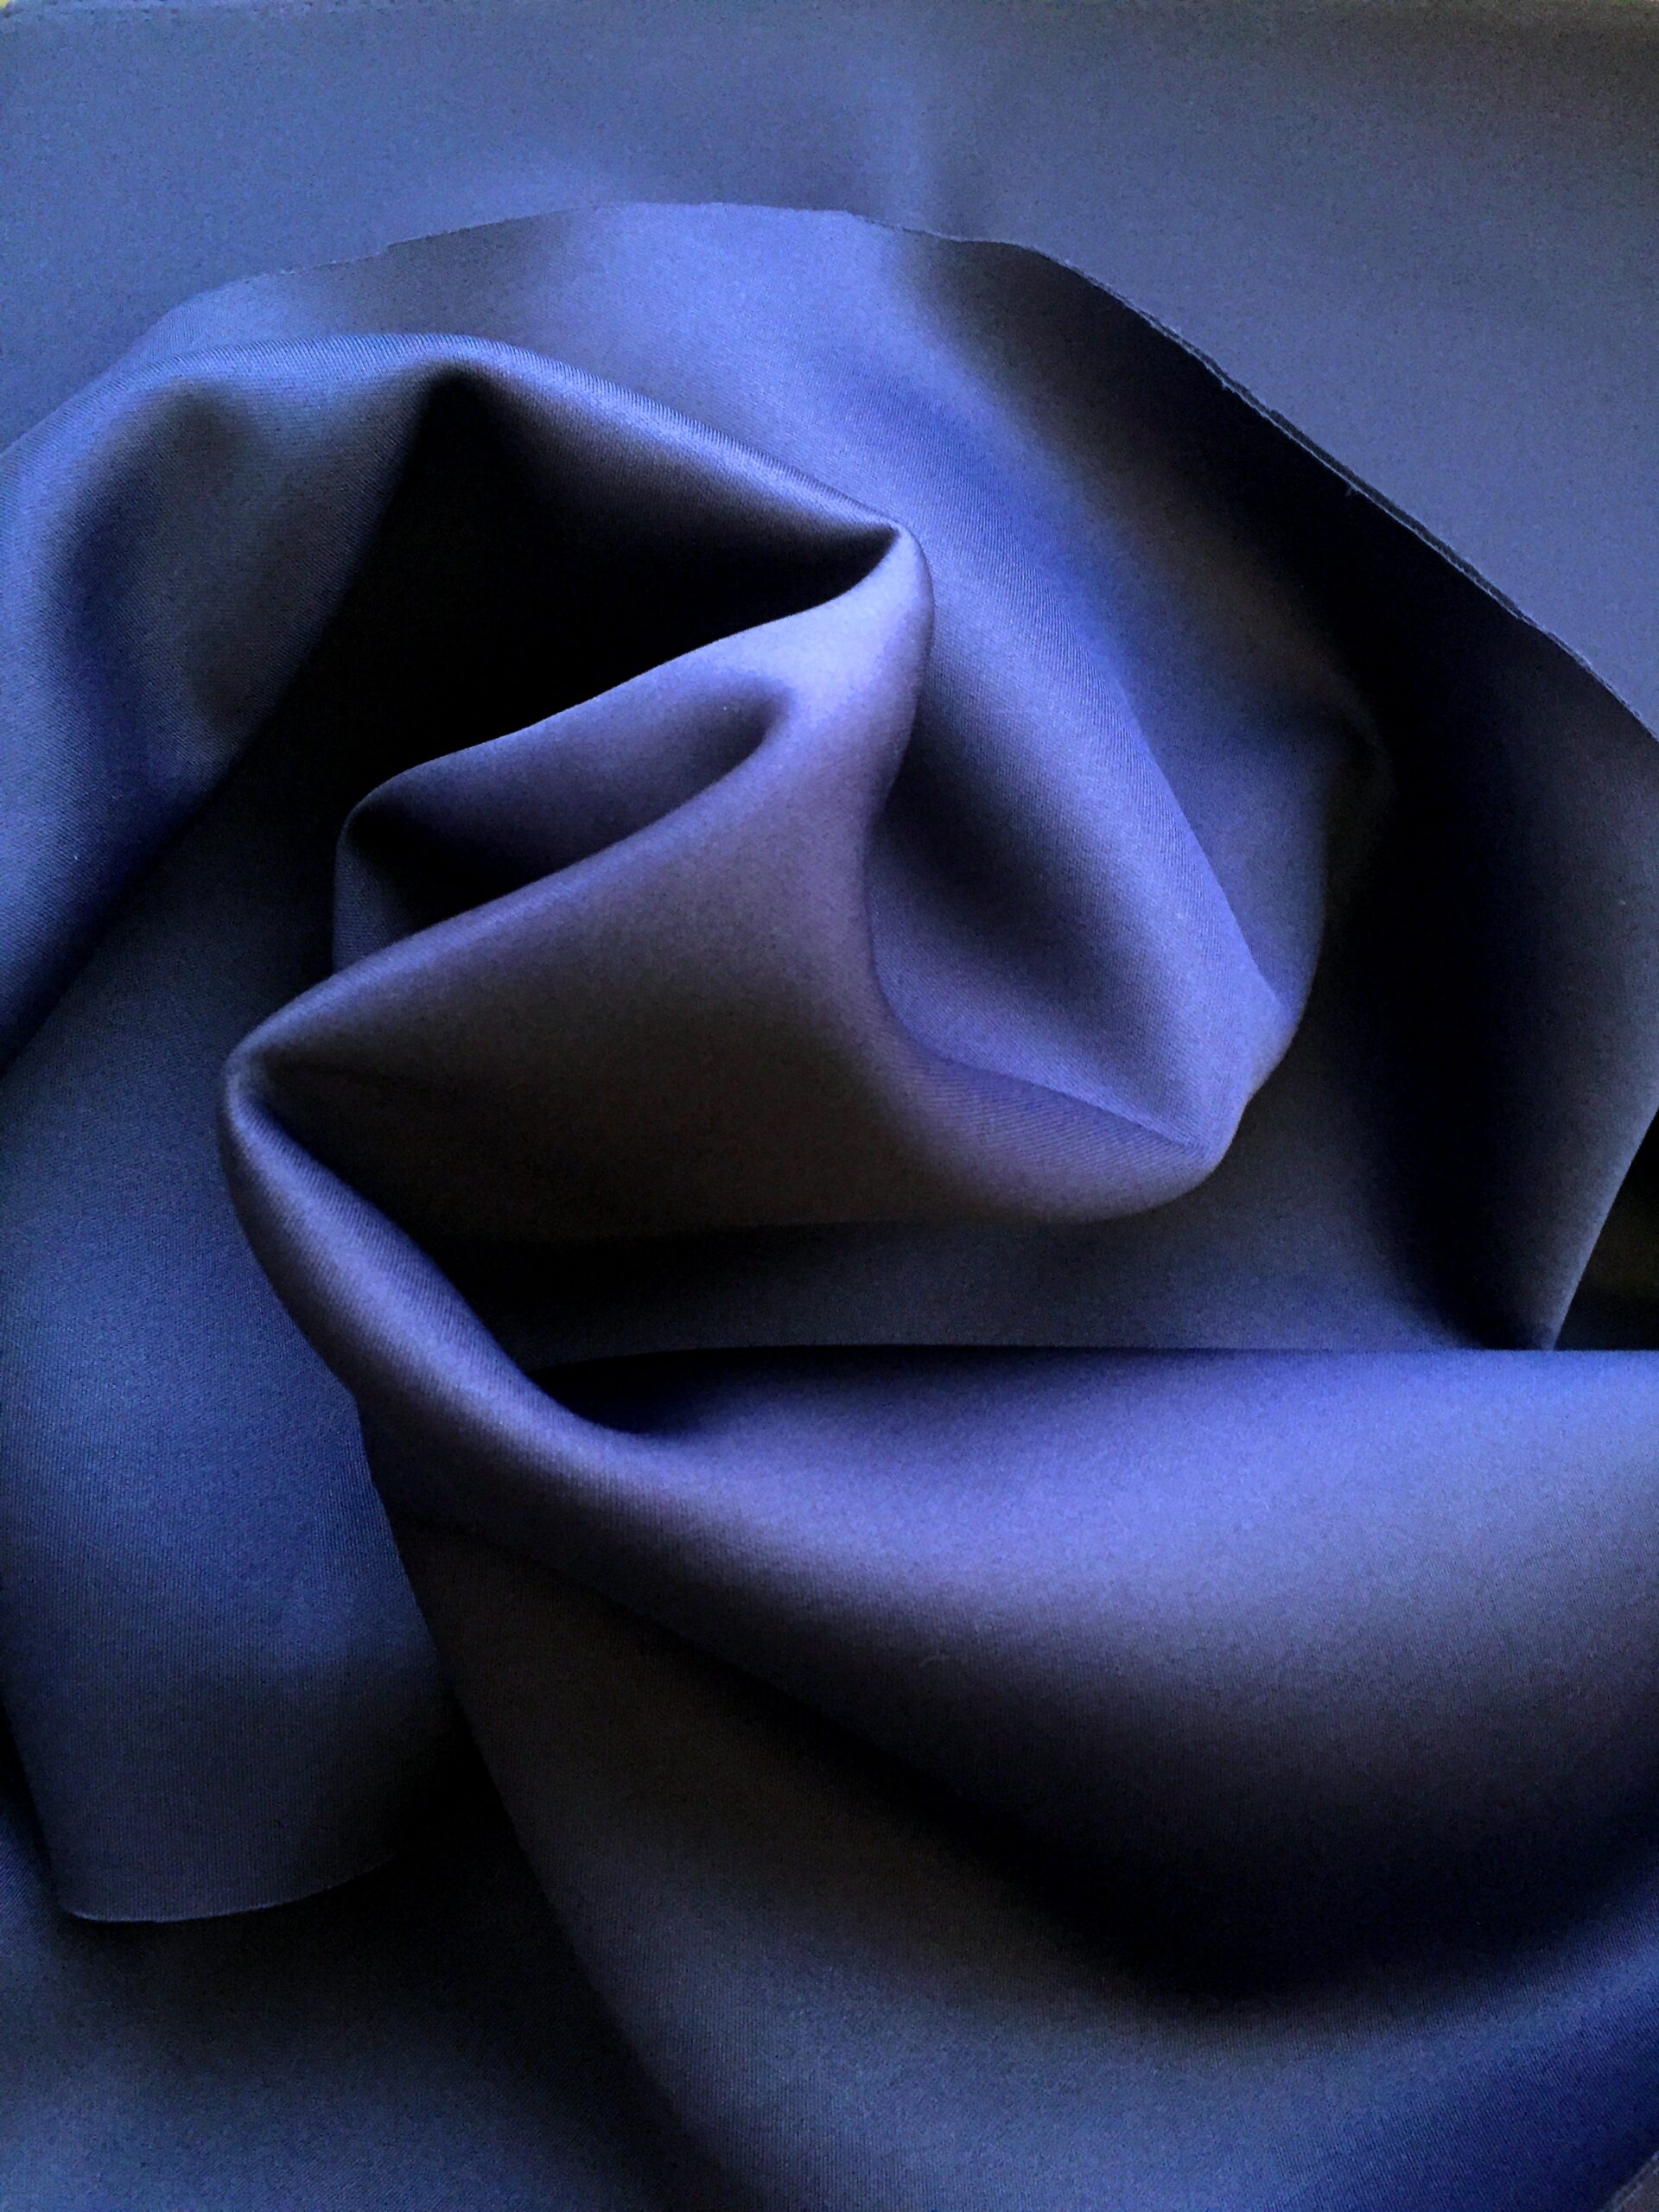 Neoprene Scuba Wetsuit Fabric Material - DK GREY - CRS Fur Fabrics